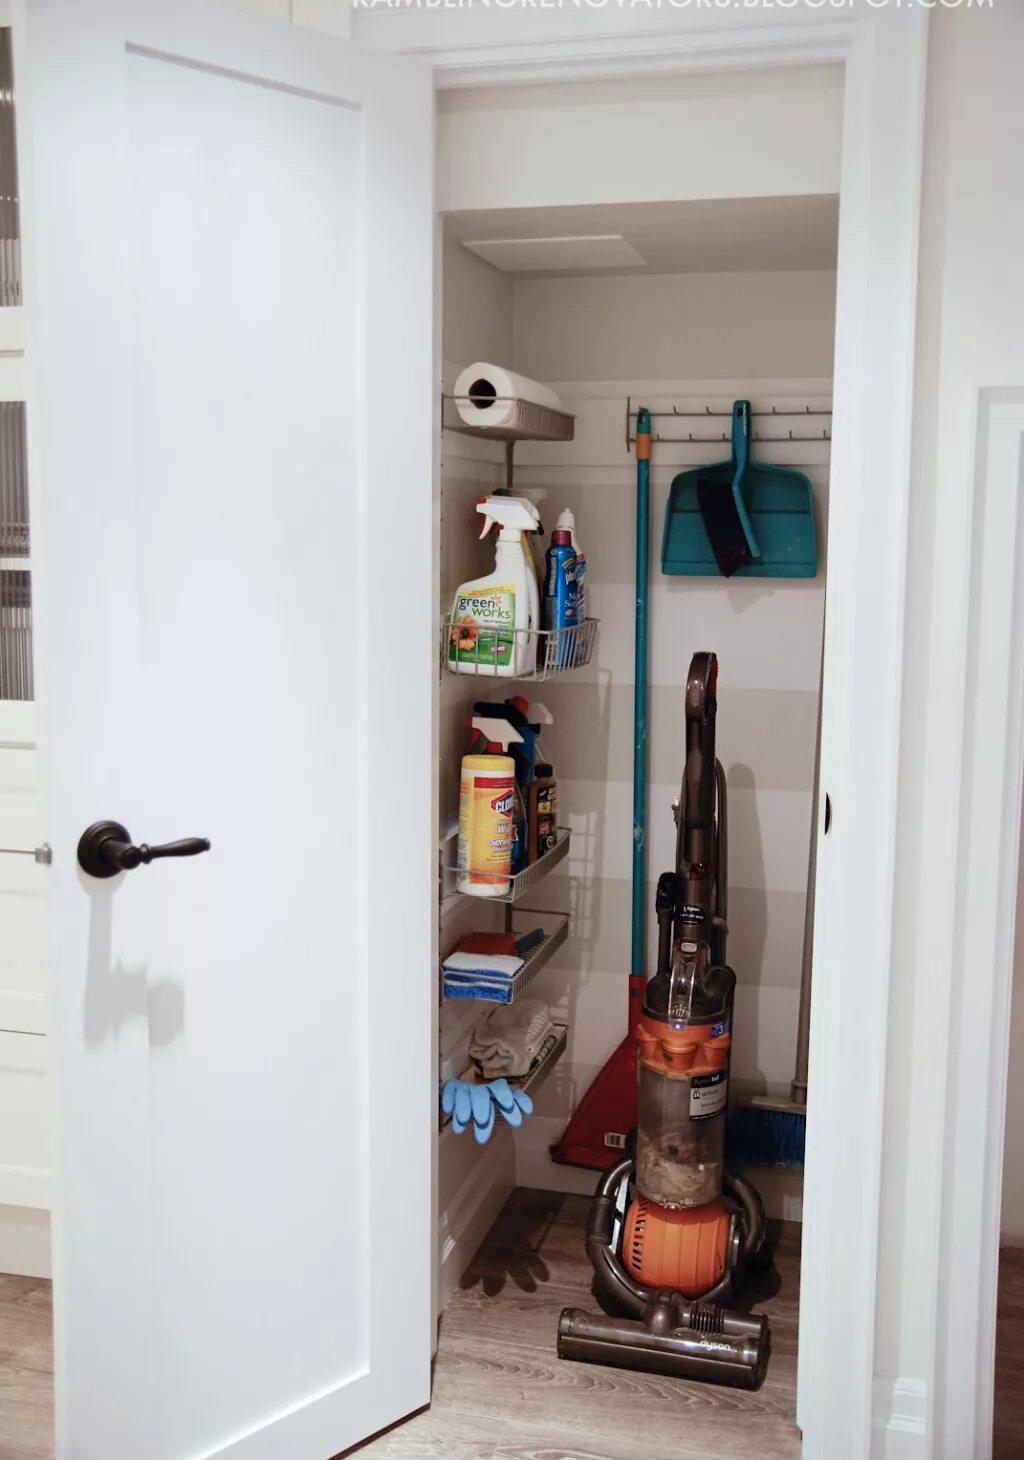 Хозяйственный шкаф. Шкаф для хранения пылесоса и швабры. Кладовая для хранения инвентаря.